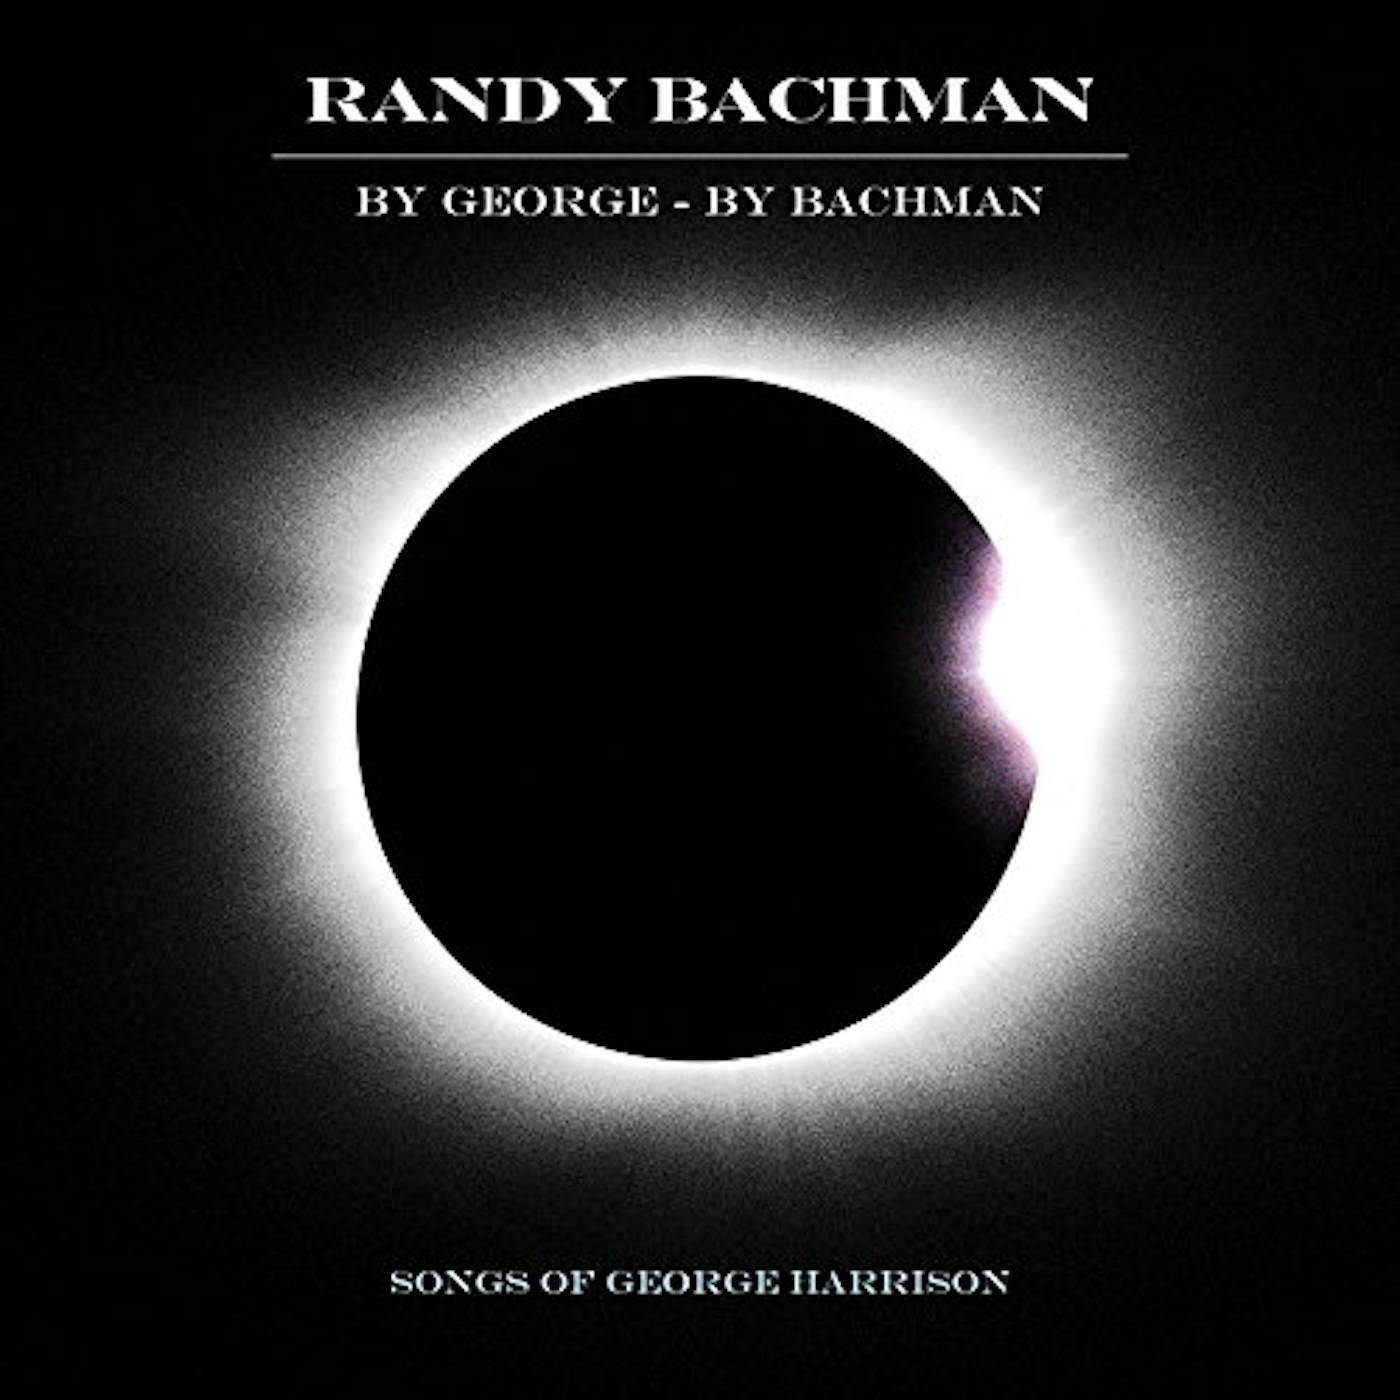 Randy Bachman BY GEORGE BY BACHMAN (LP) Vinyl Record